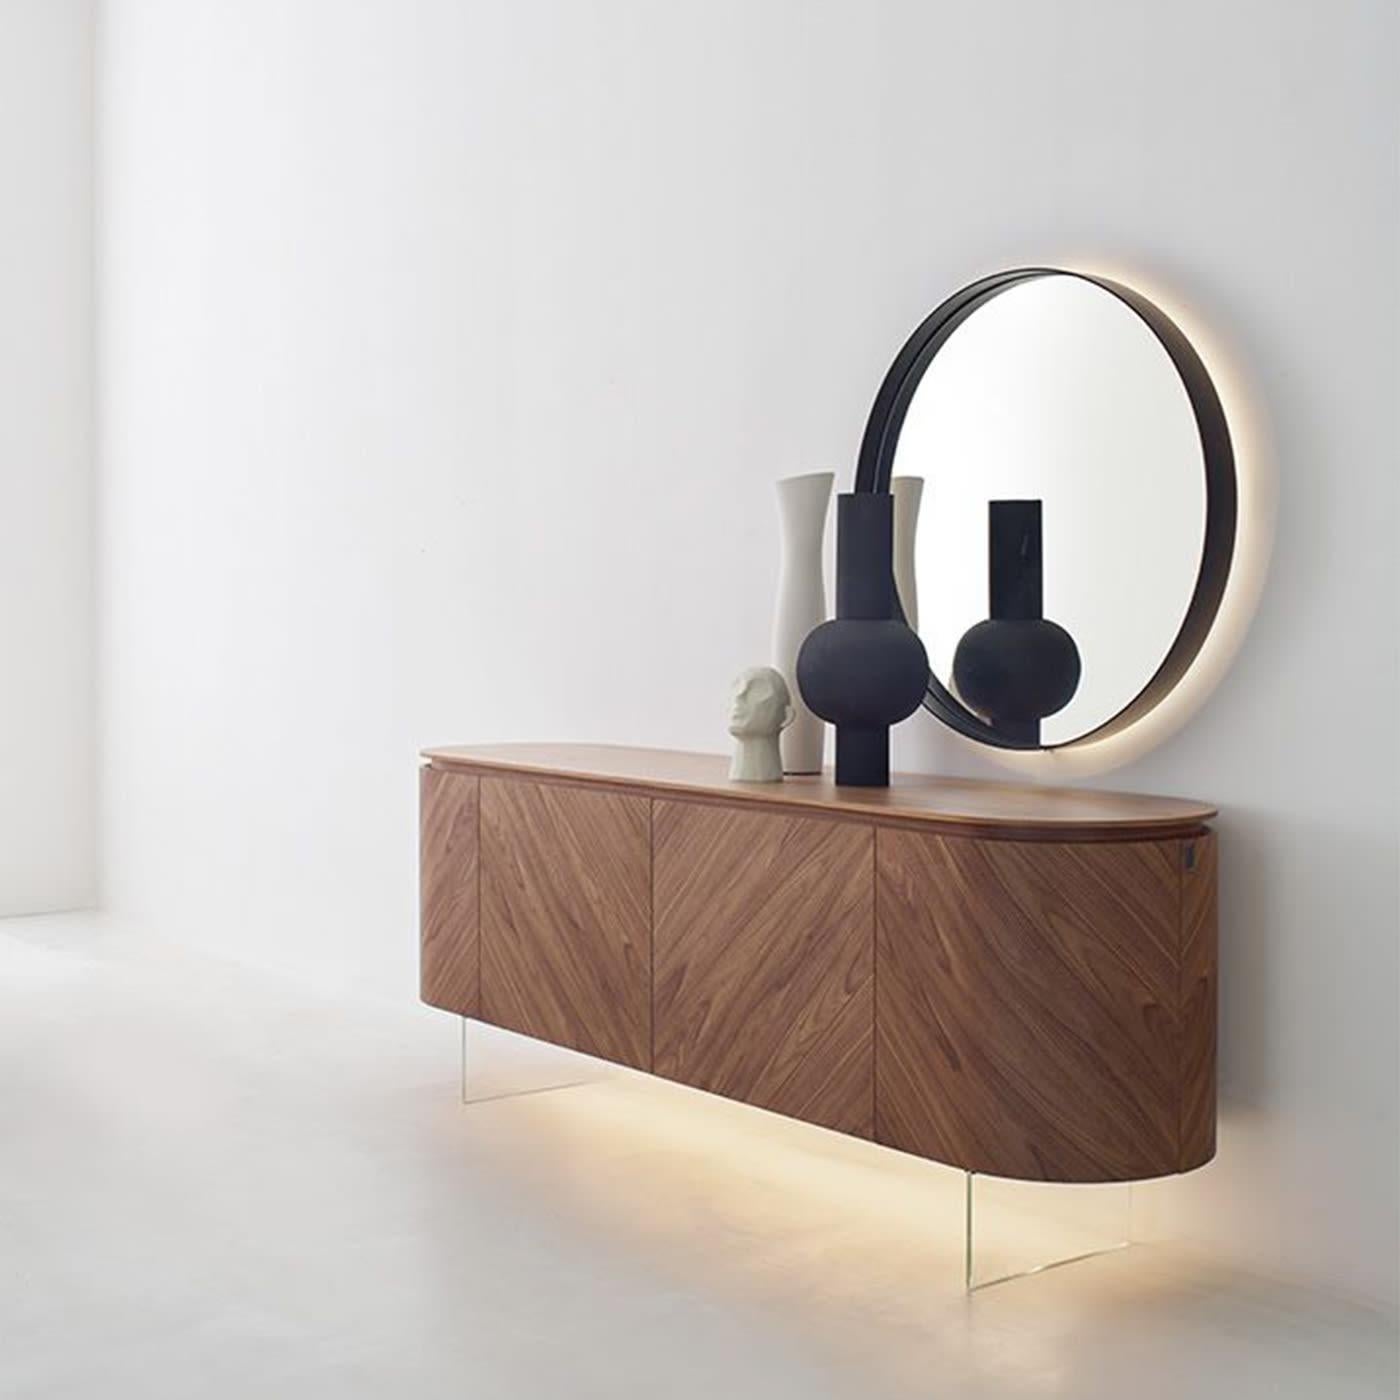 Un style industriel subtil imprègne ce miroir sophistiqué, un superbe exemple de design minimaliste. Essentielle dans sa forme parfaitement ronde célébrant la perfection géométrique du cercle, elle est dotée d'une audacieuse monture en métal en